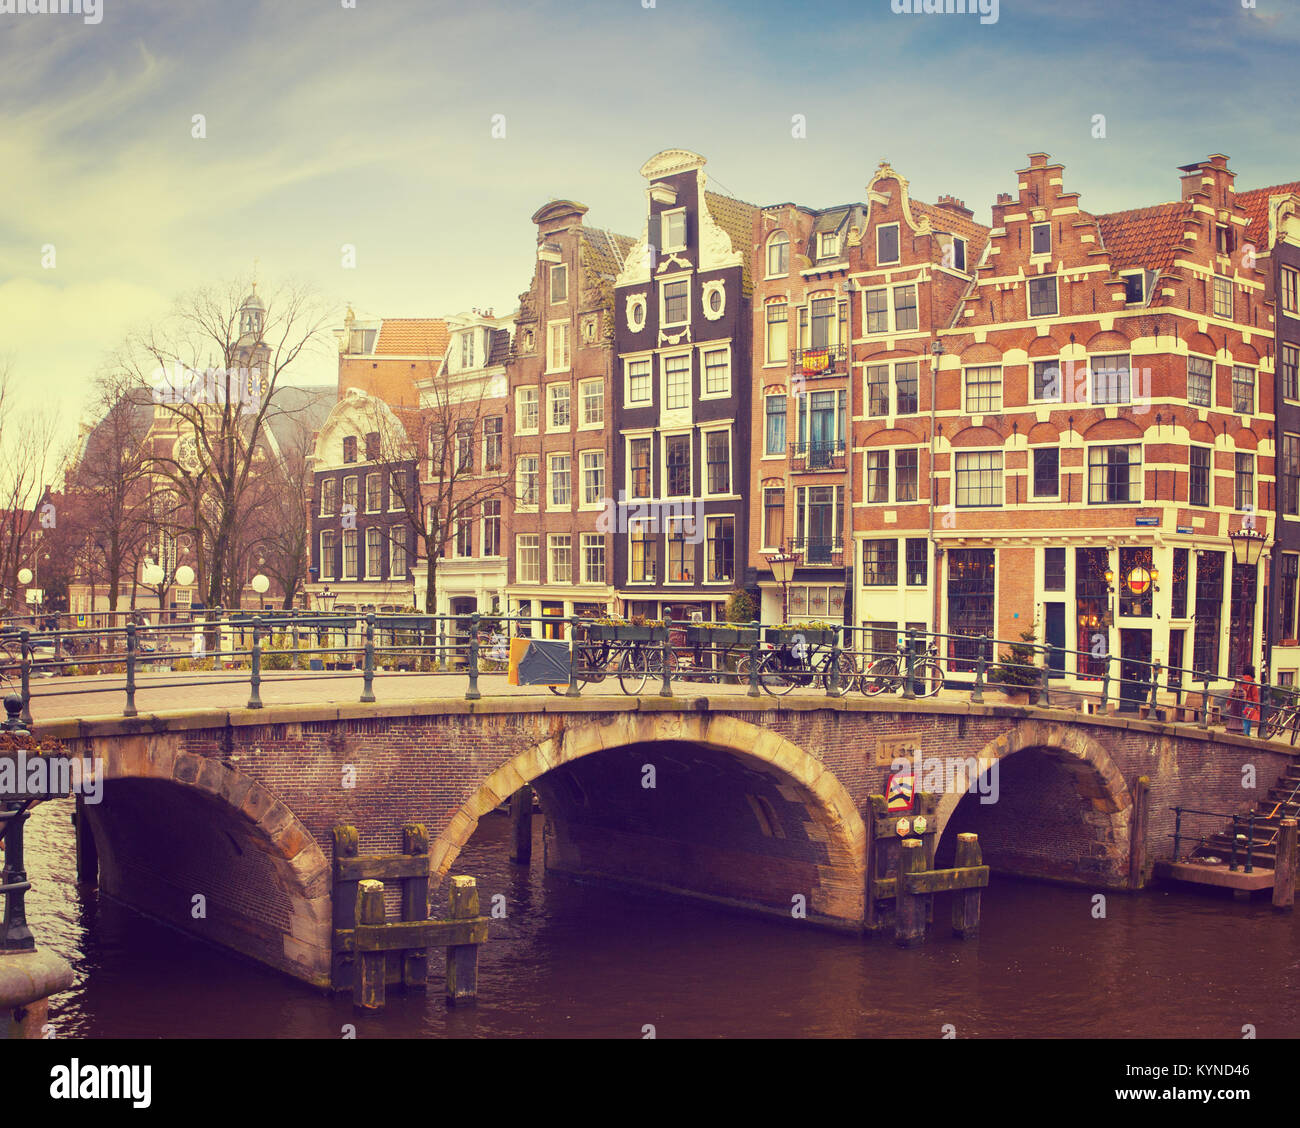 Prinsengracht Kanal, Amsterdam, Niederlande. Typische holländische Häuser mit einer Krähe - stufengiebel hinter der Brücke. Getonten Bild Stockfoto